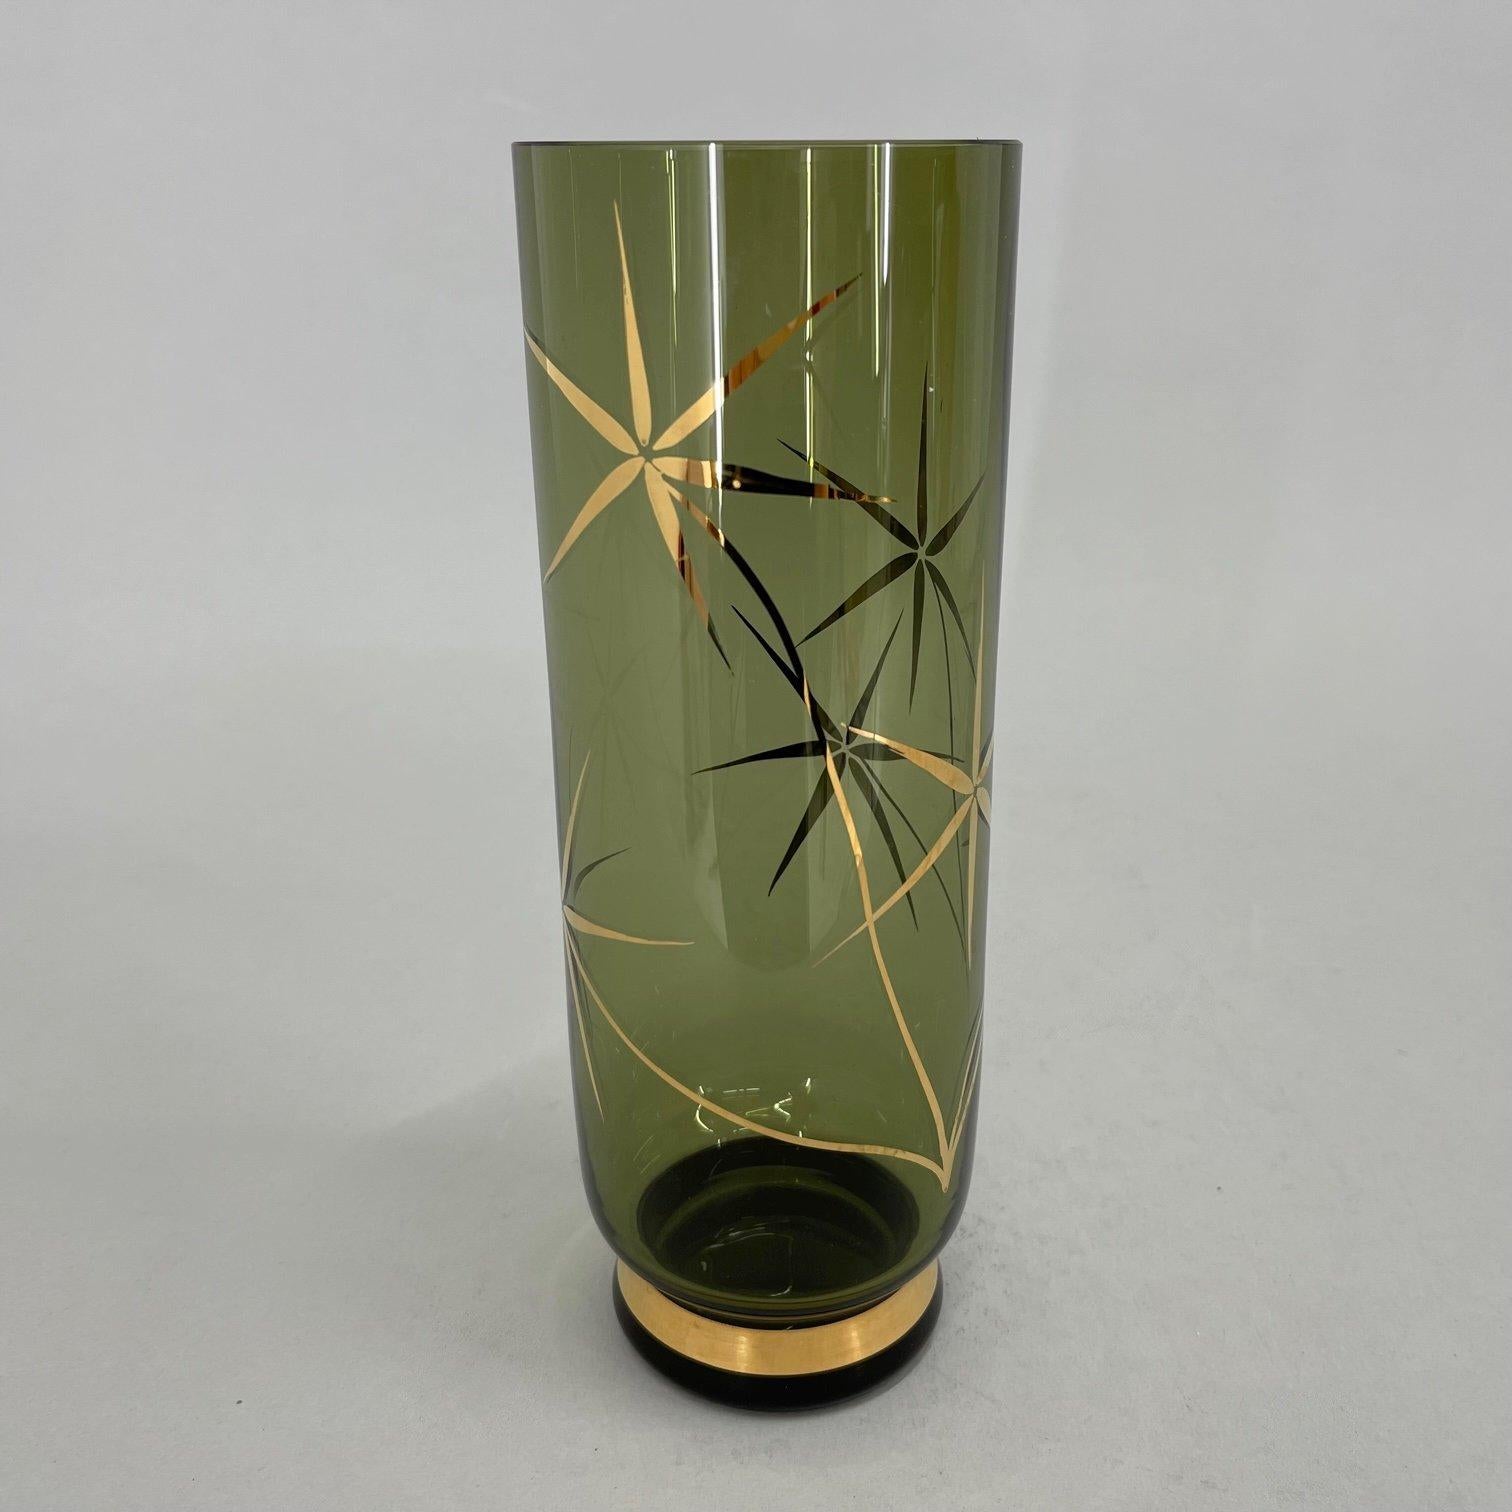 Vintage-Vase aus der ehemaligen Tschechoslowakei, hergestellt in den 1960er Jahren.